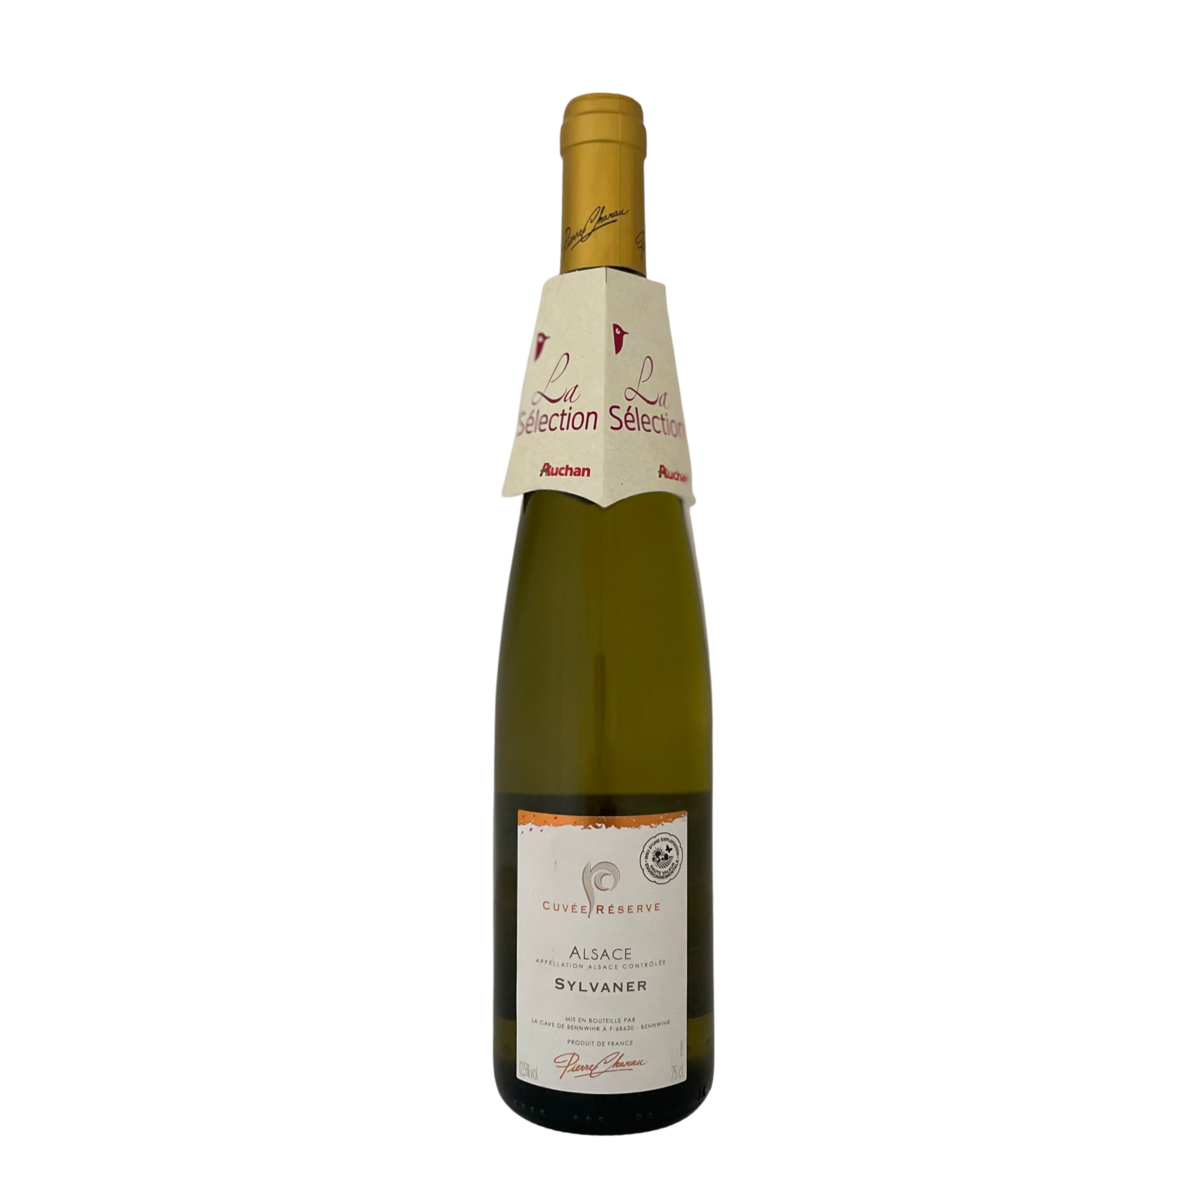 PIERRE CHANAU AOP Alsace Sylvaner cuvée particulière HVE blanc 75cl